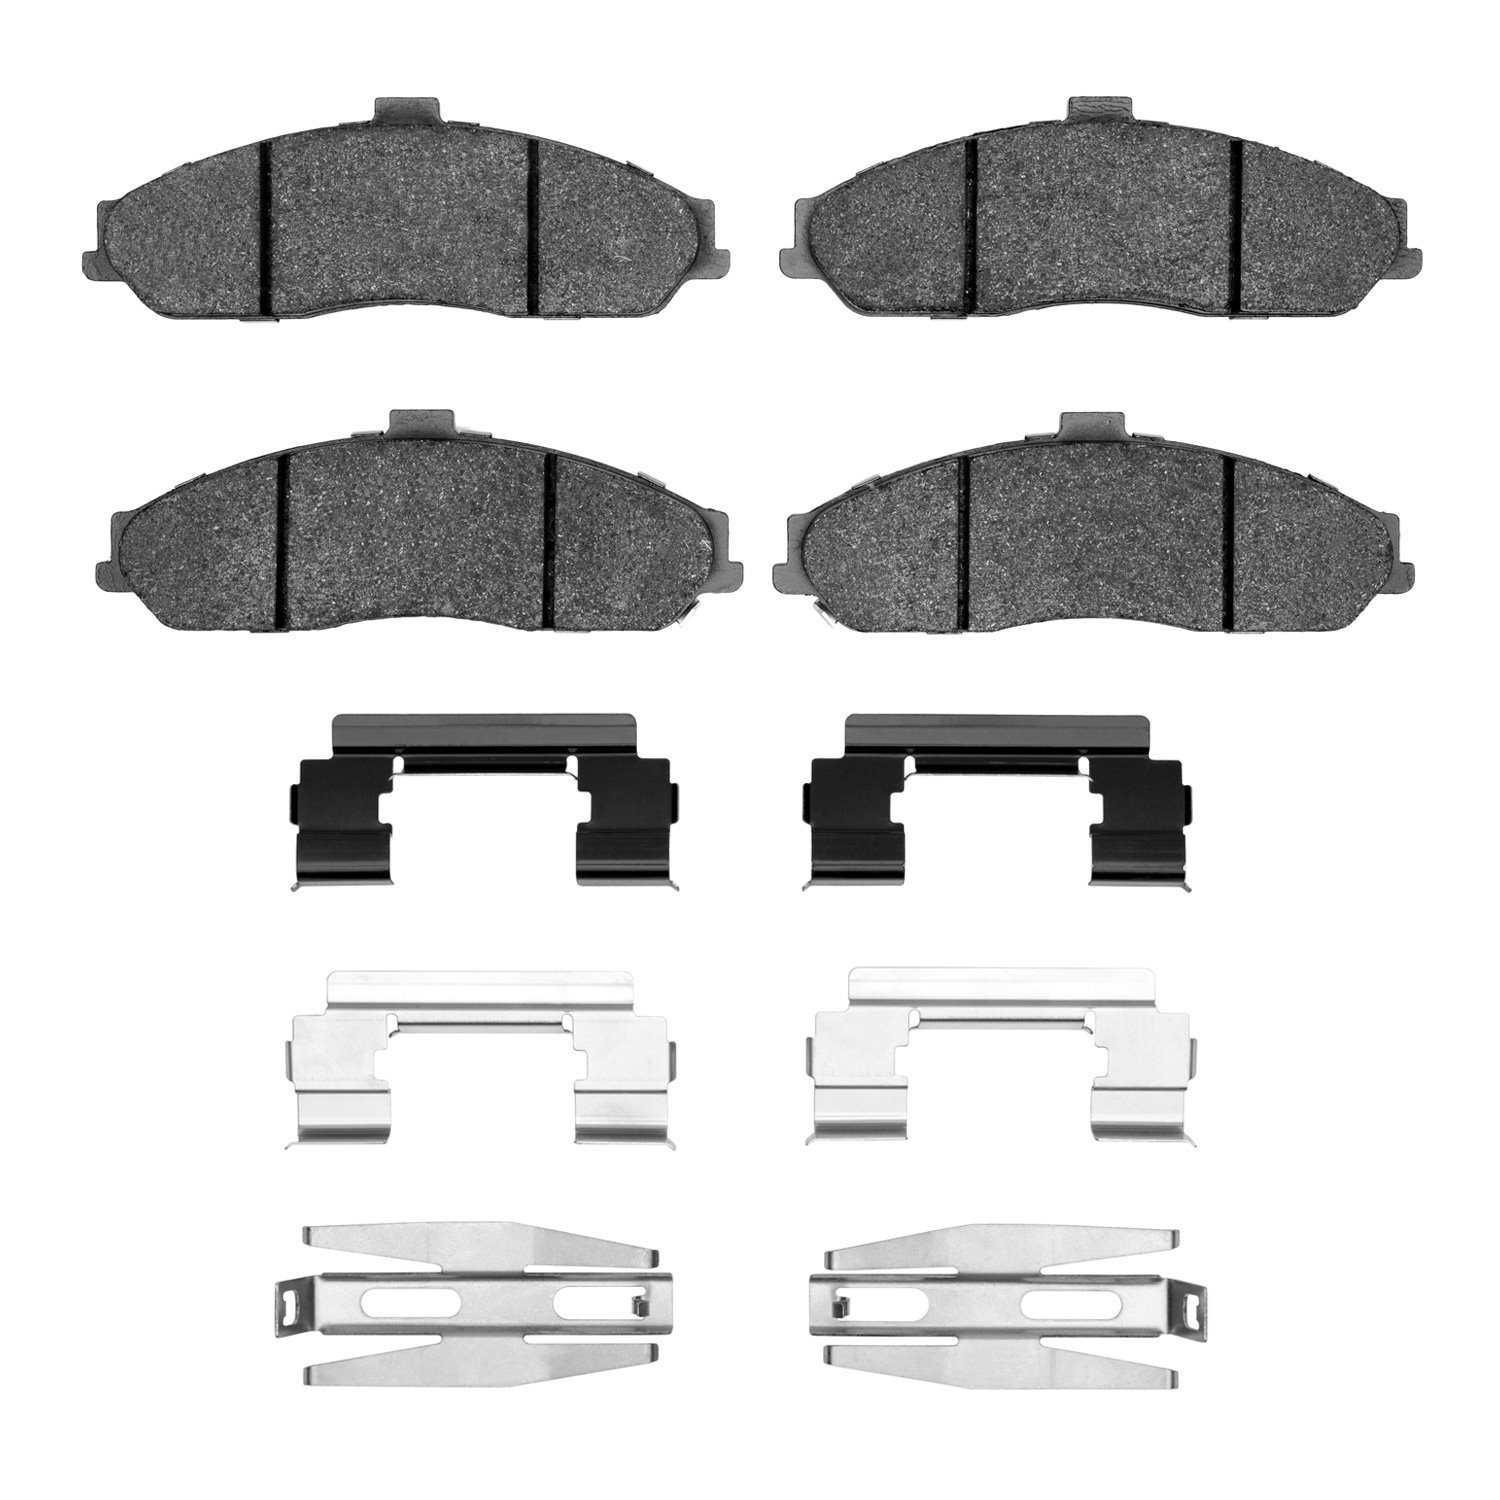 1551-0731-01 5000 Advanced Low-Metallic Brake Pads & Hardware Kit, 2011-2013 GM, Position: Front